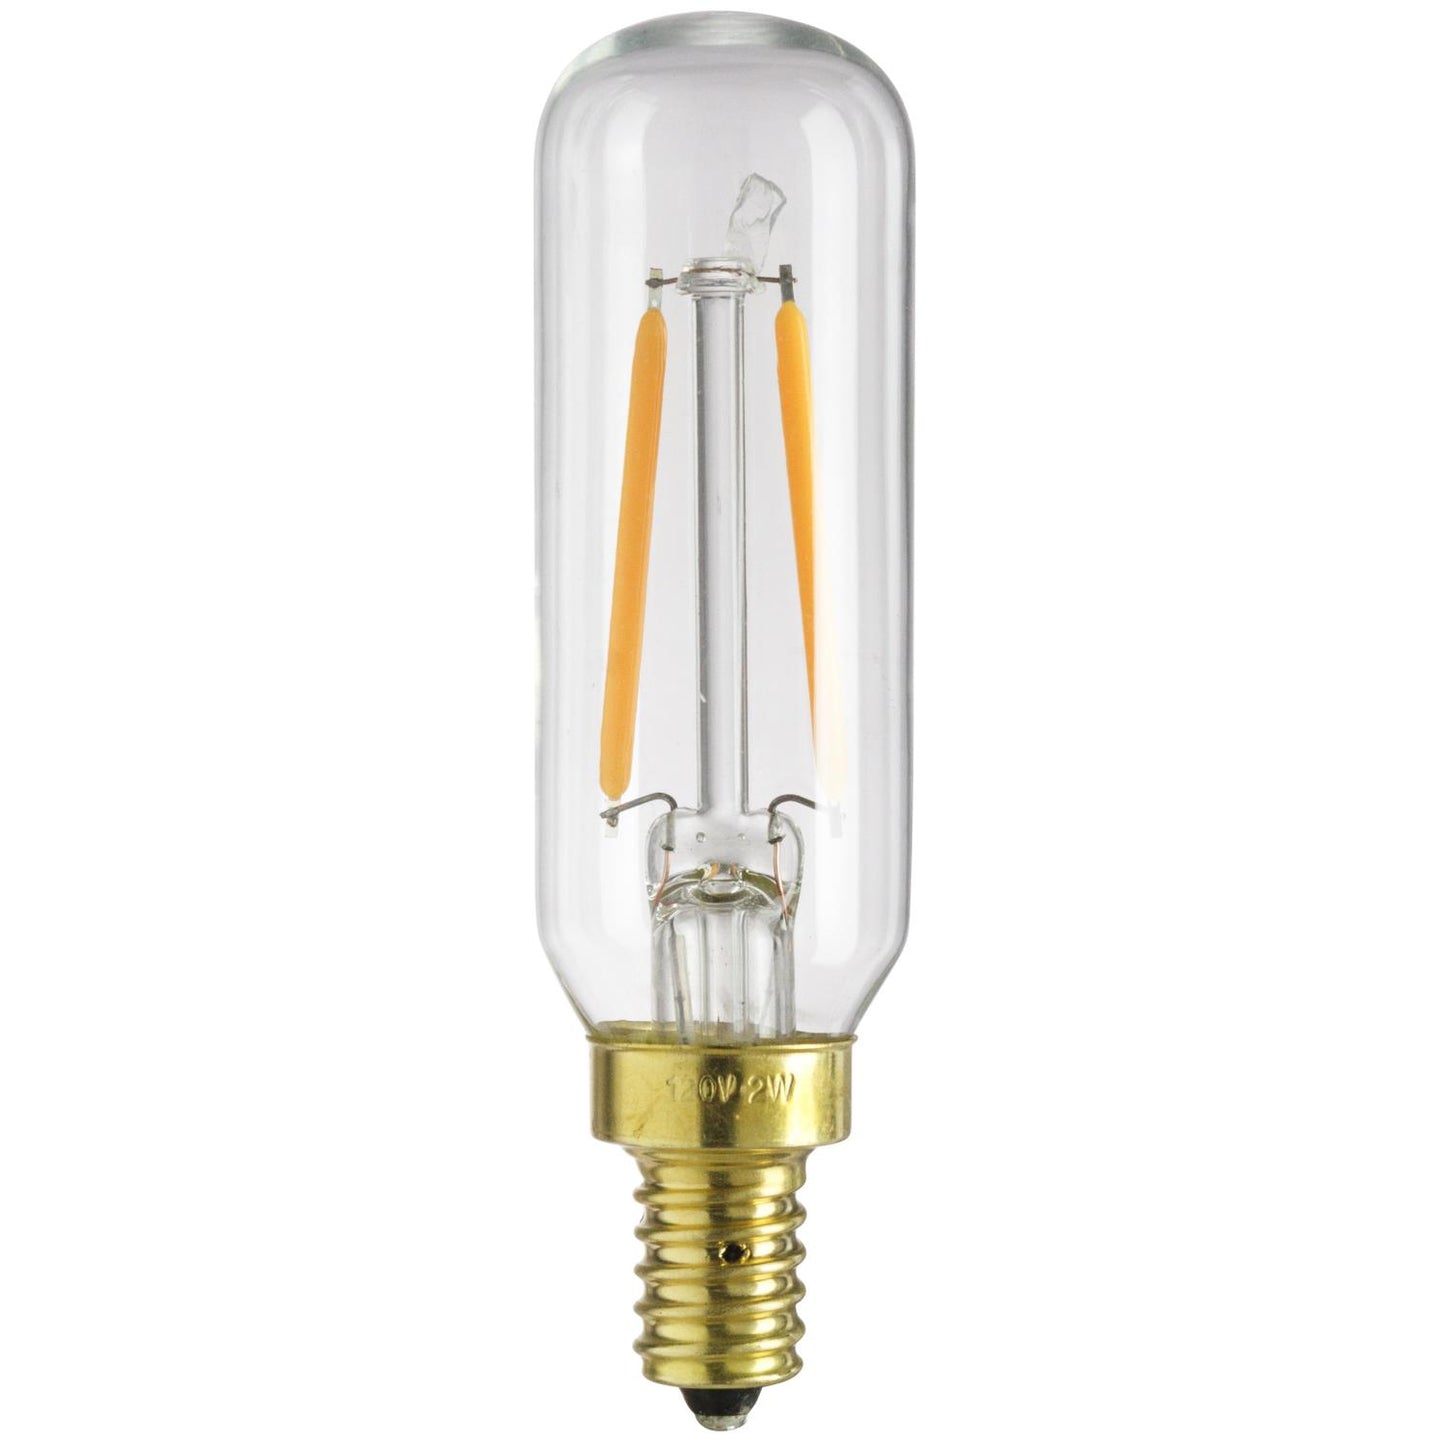 Sunlite LED Vintage T8 2W Light Bulb Candelabra (E12) Base, Warm White